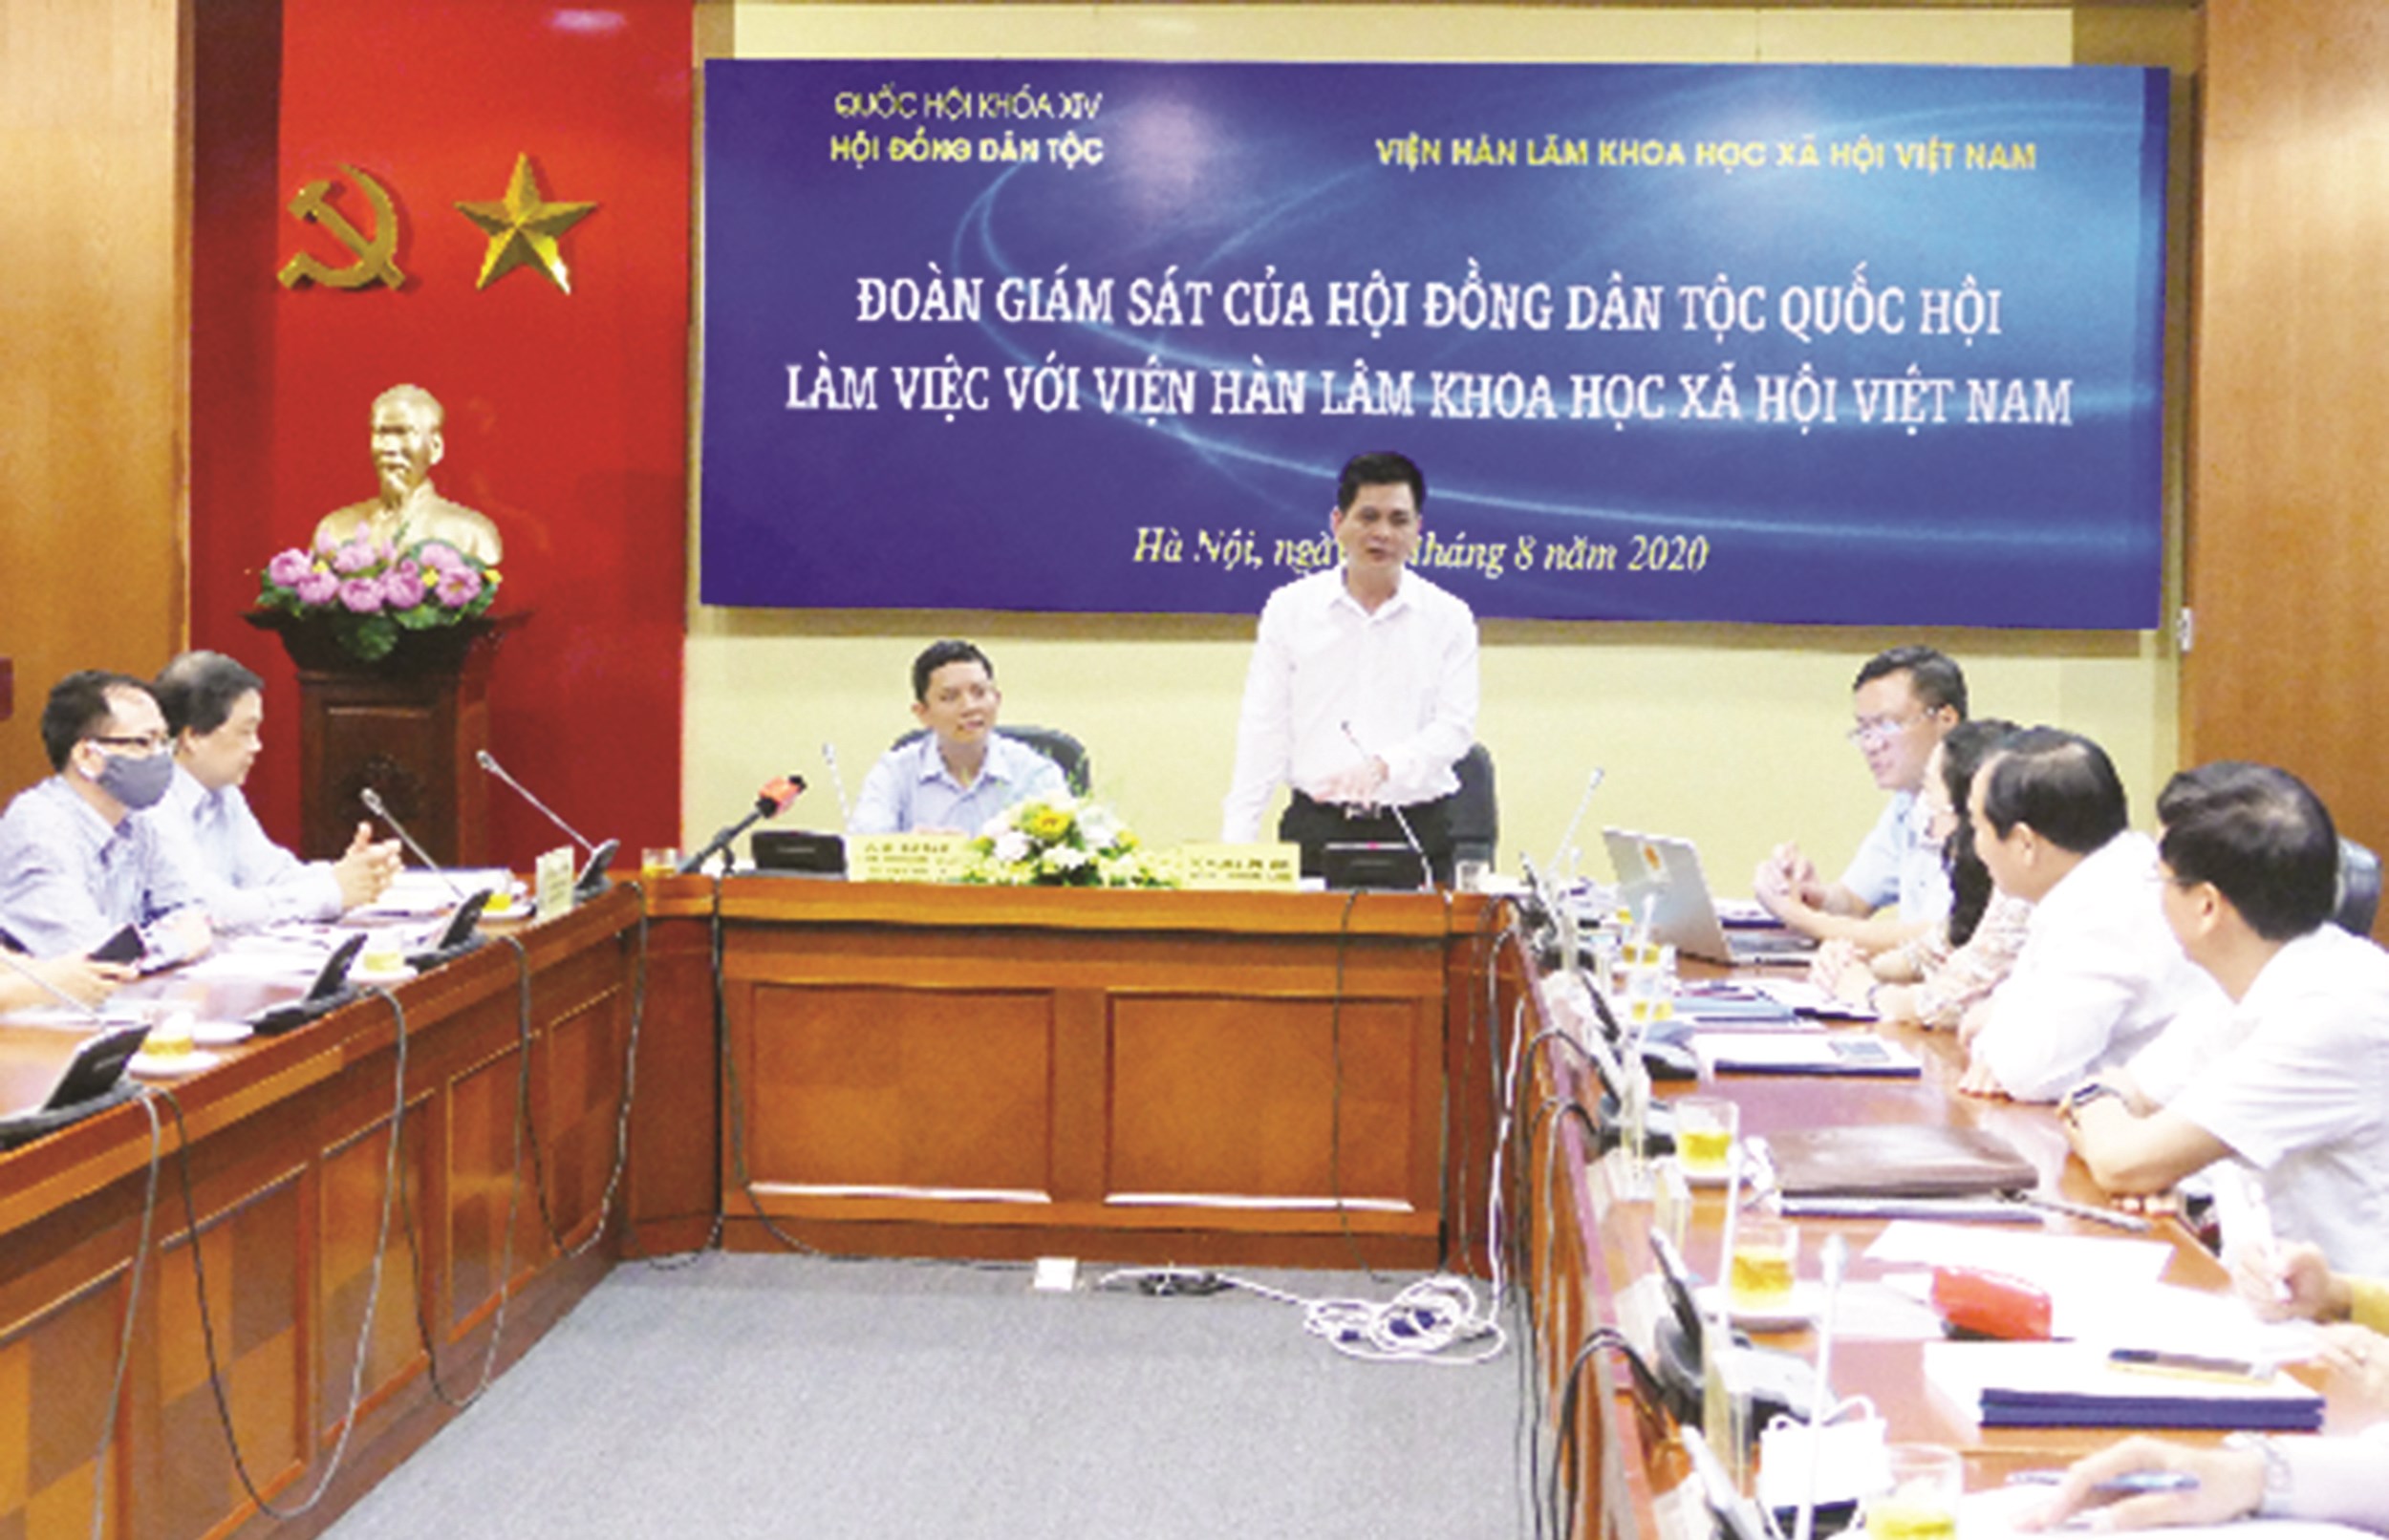 Phó Chủ tịch Hội đồng Dân tộc Nguyễn Lâm Thành phát biểu tại cuộc làm việc.